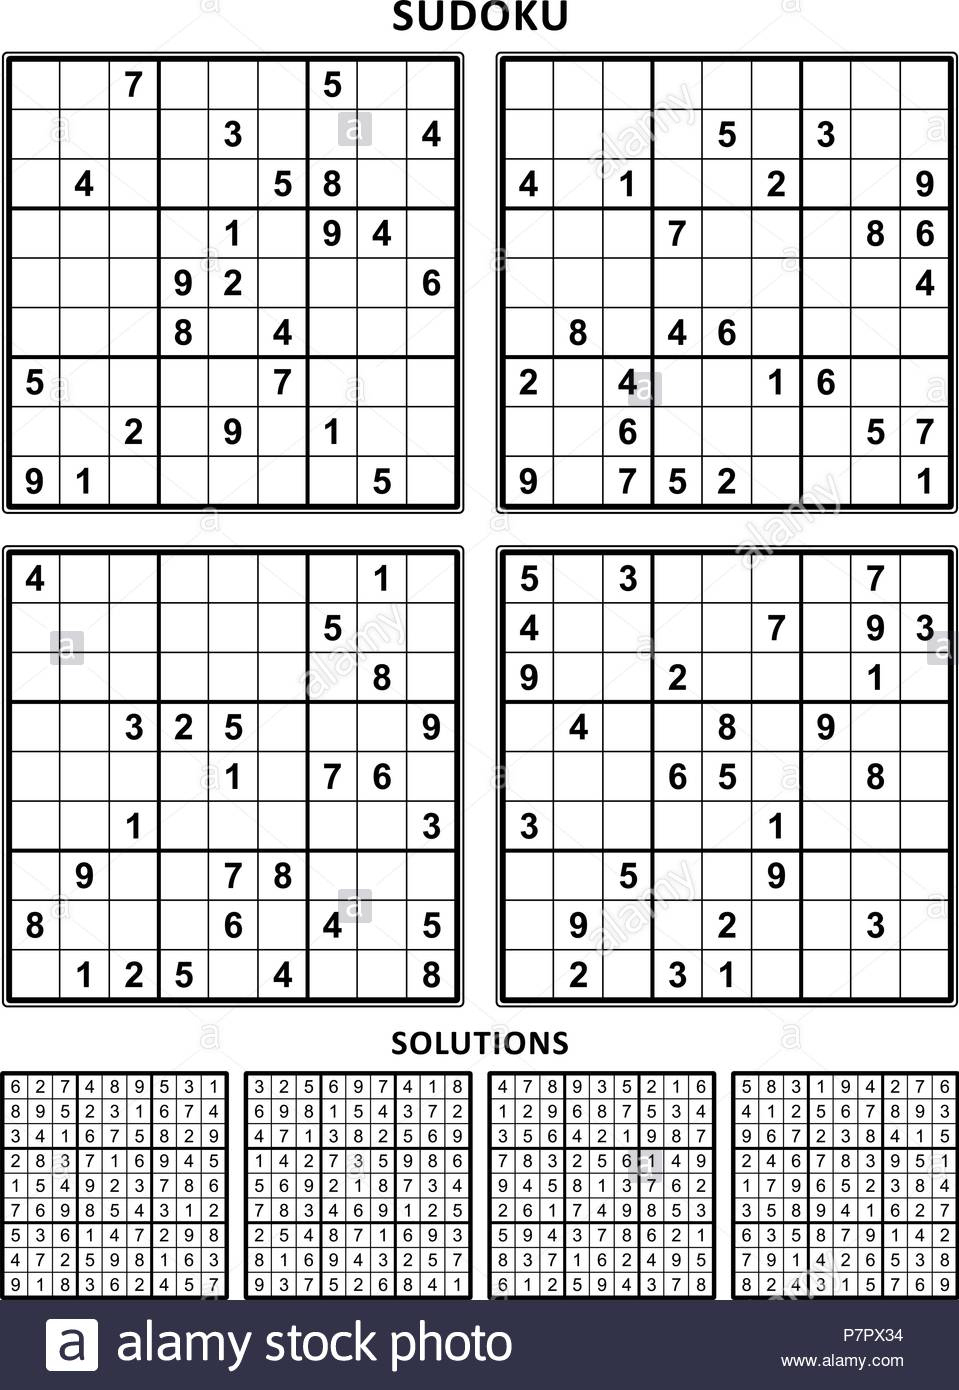 Printable Sudoku With Answers Sudoku Printables